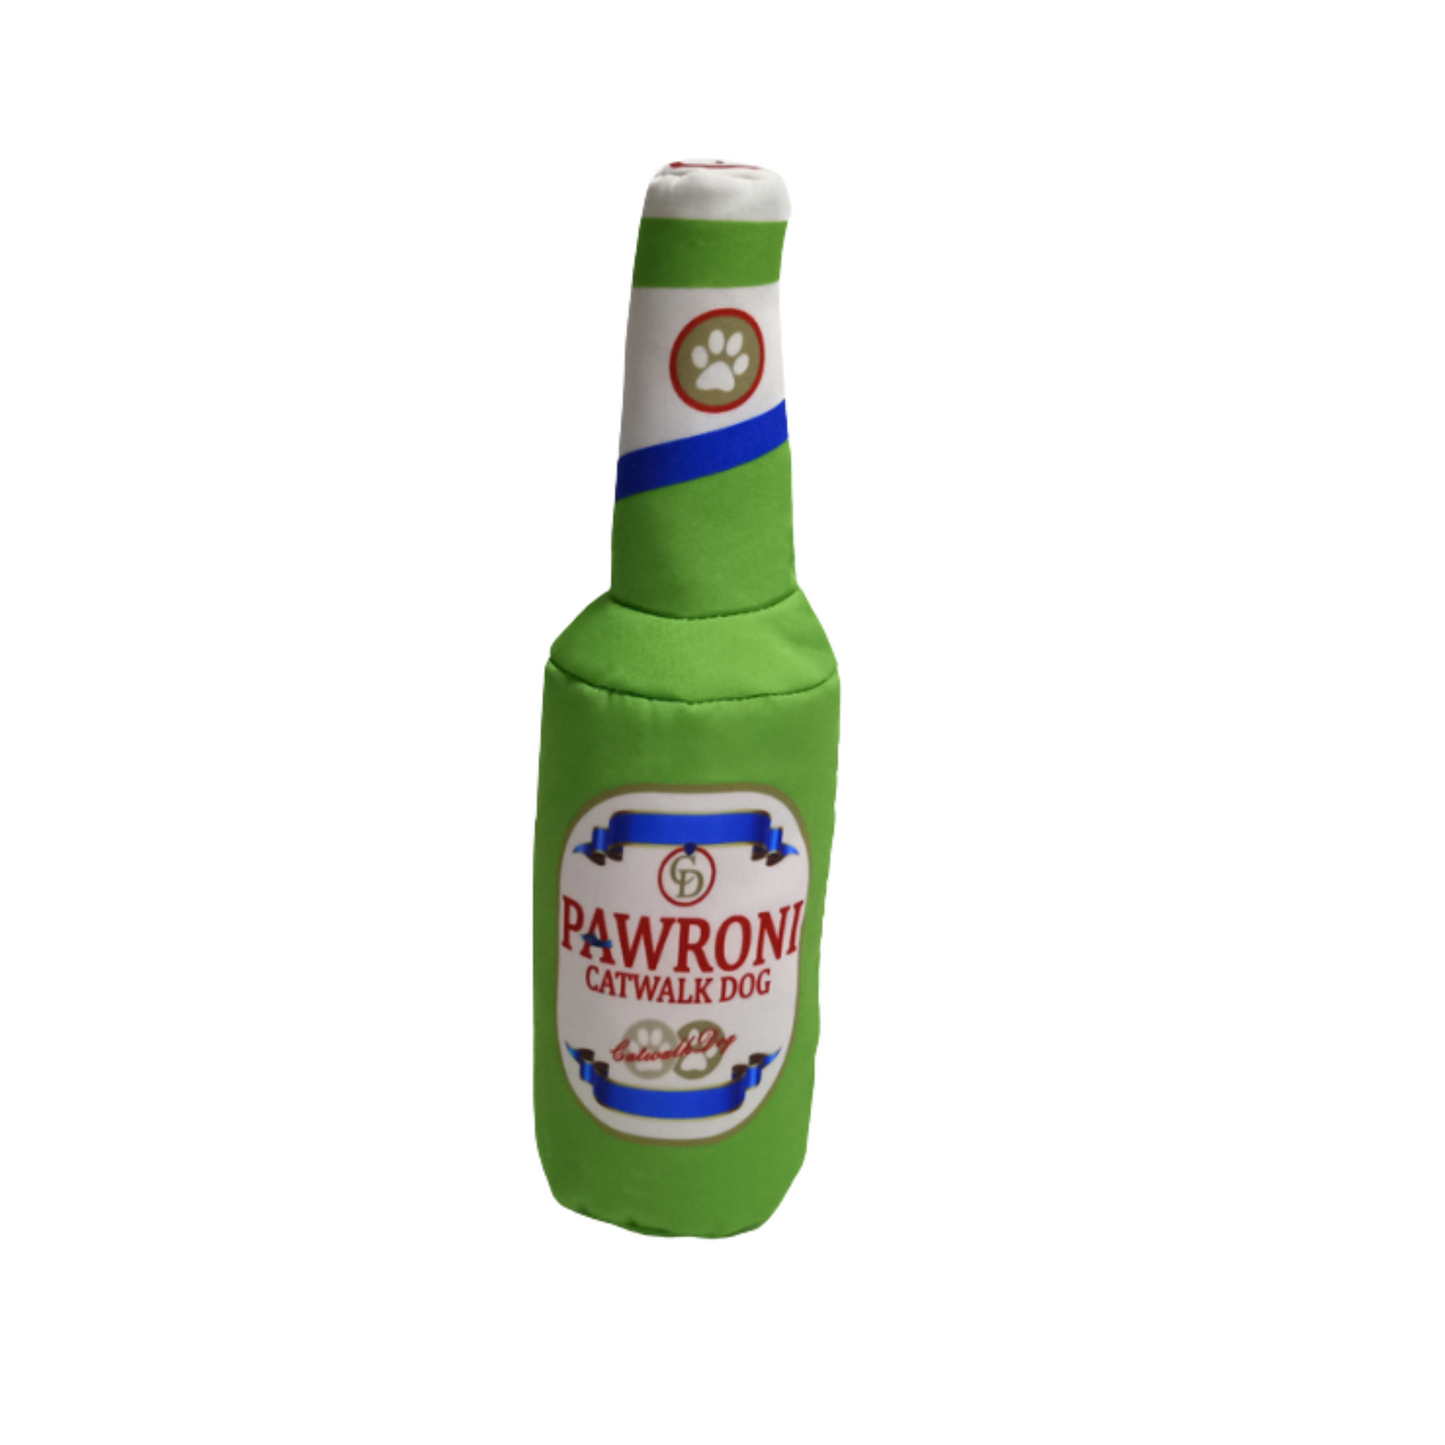 CatwalkDog Pawroni Beer Bottle Tough Dog Toy